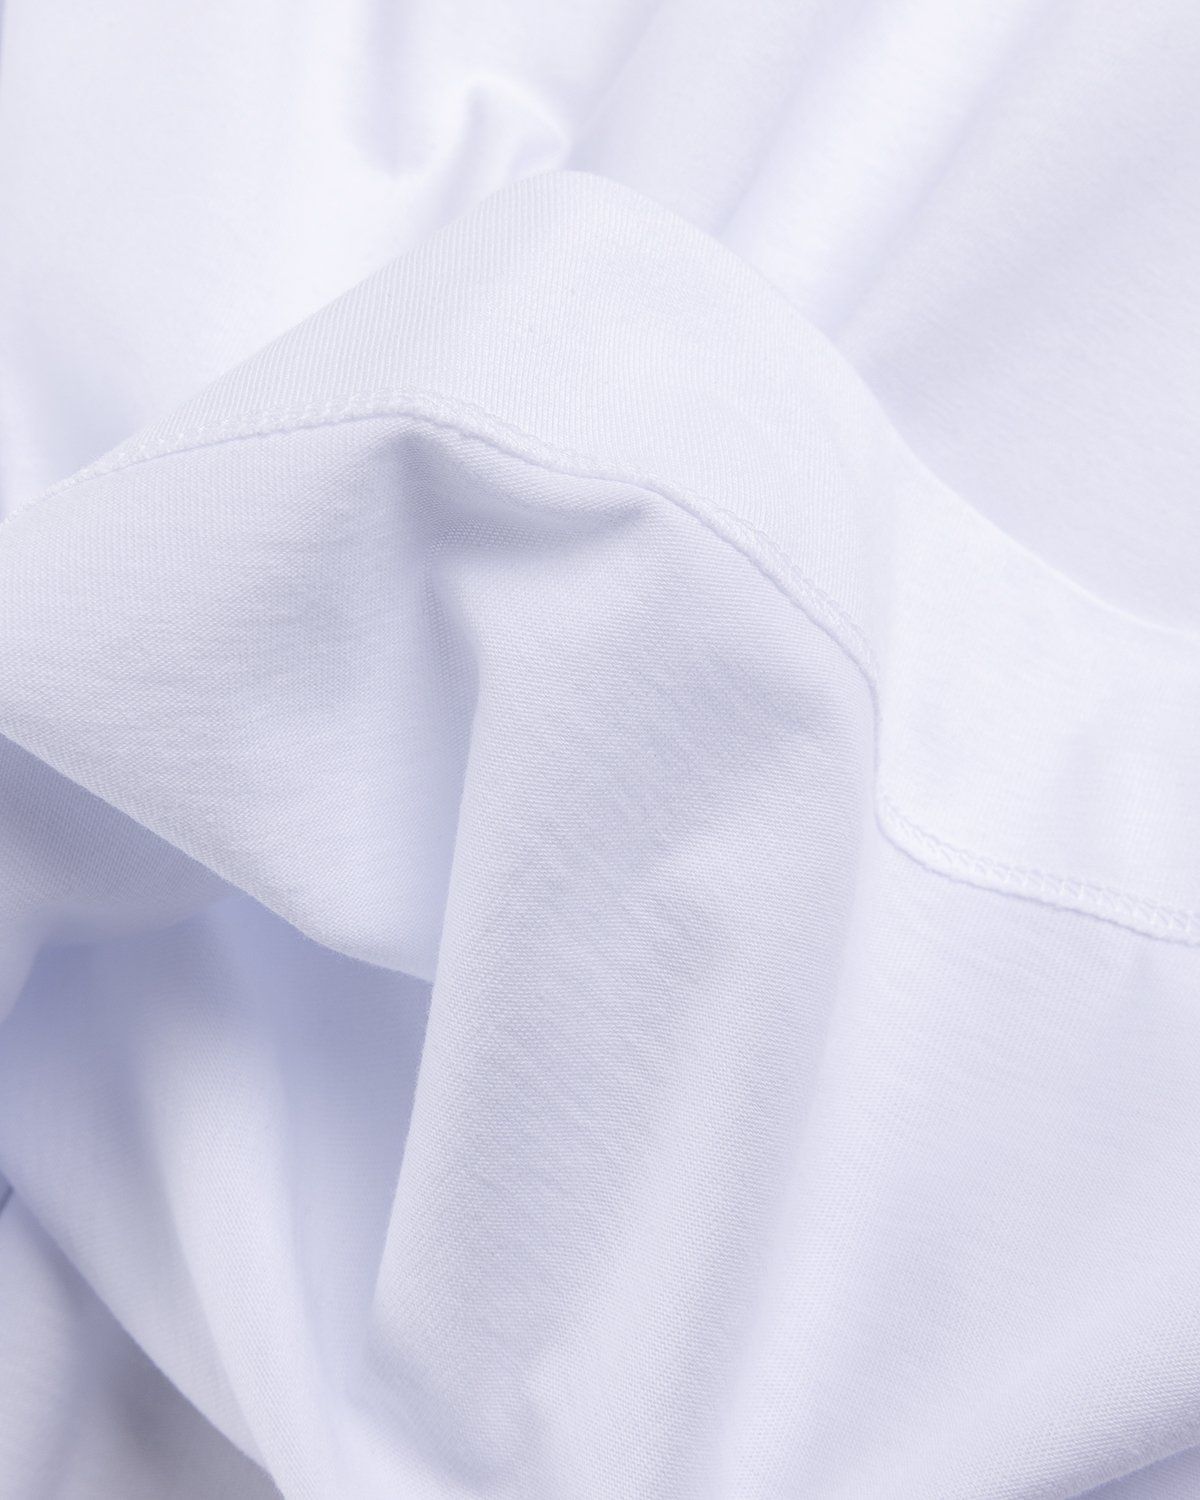 Dries van Noten – Hen Oversized T-Shirt White - T-Shirts - White - Image 4